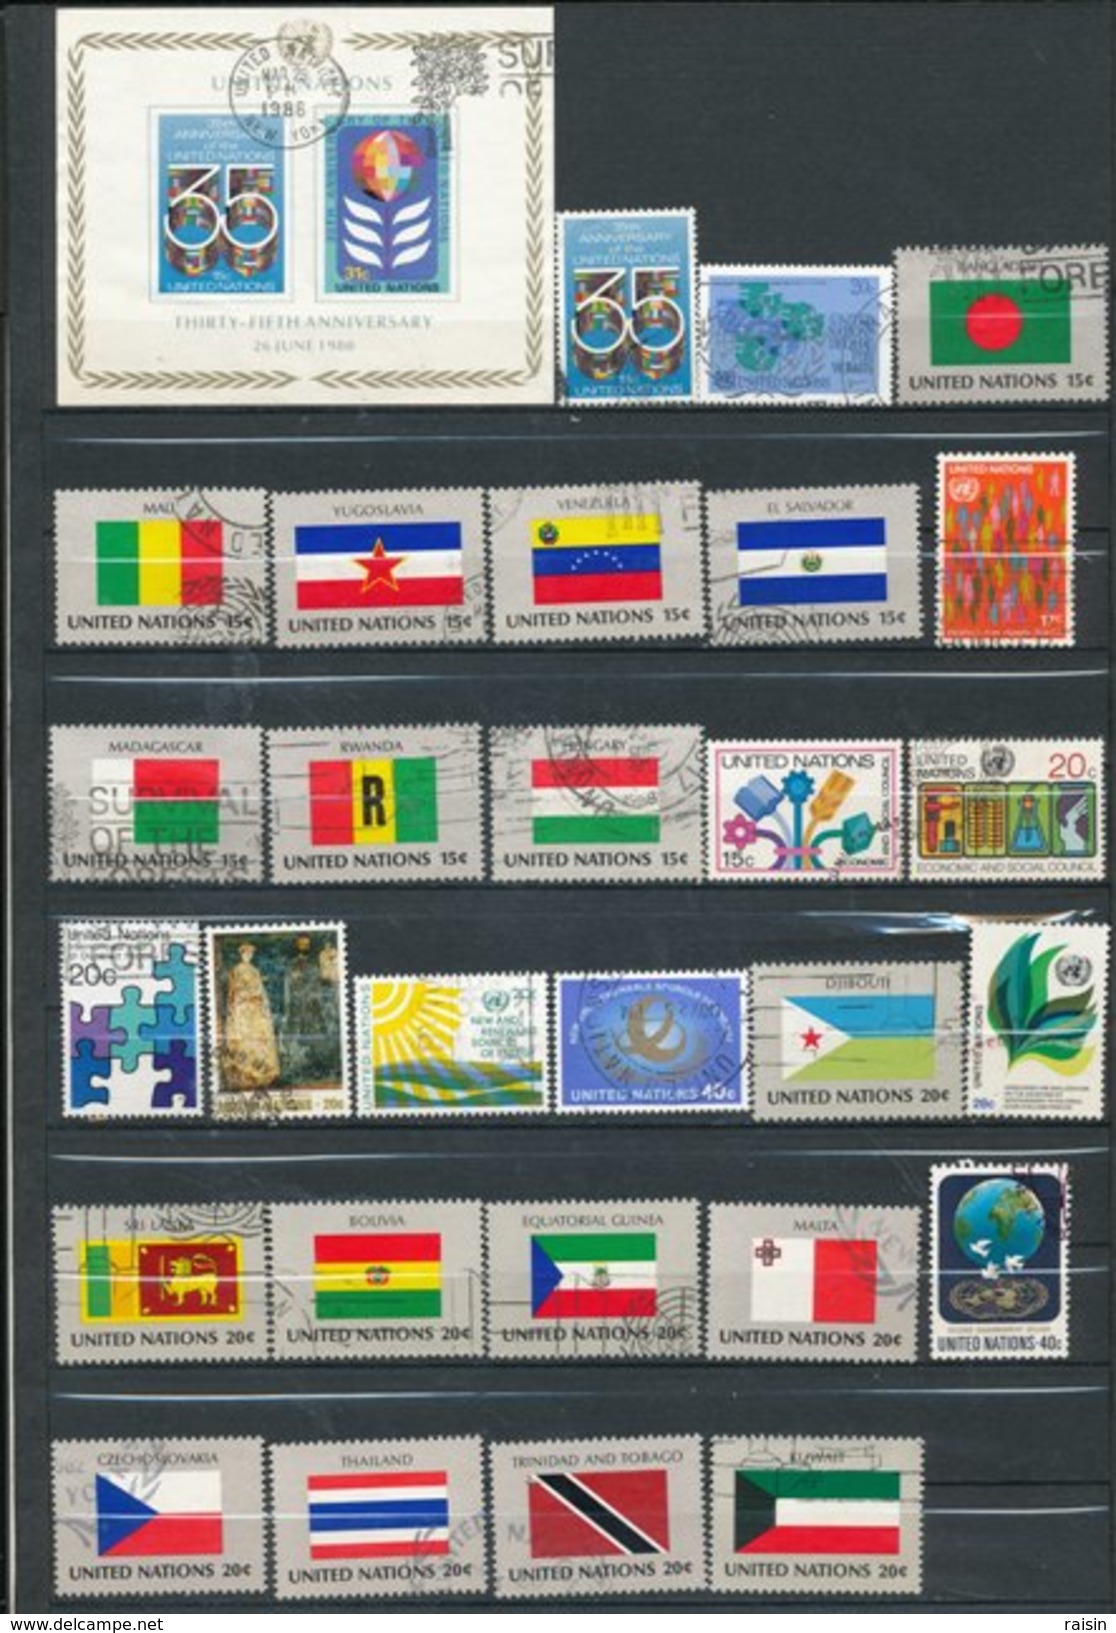 ONU New York Petite collection lot de plus de 600 timbres différents